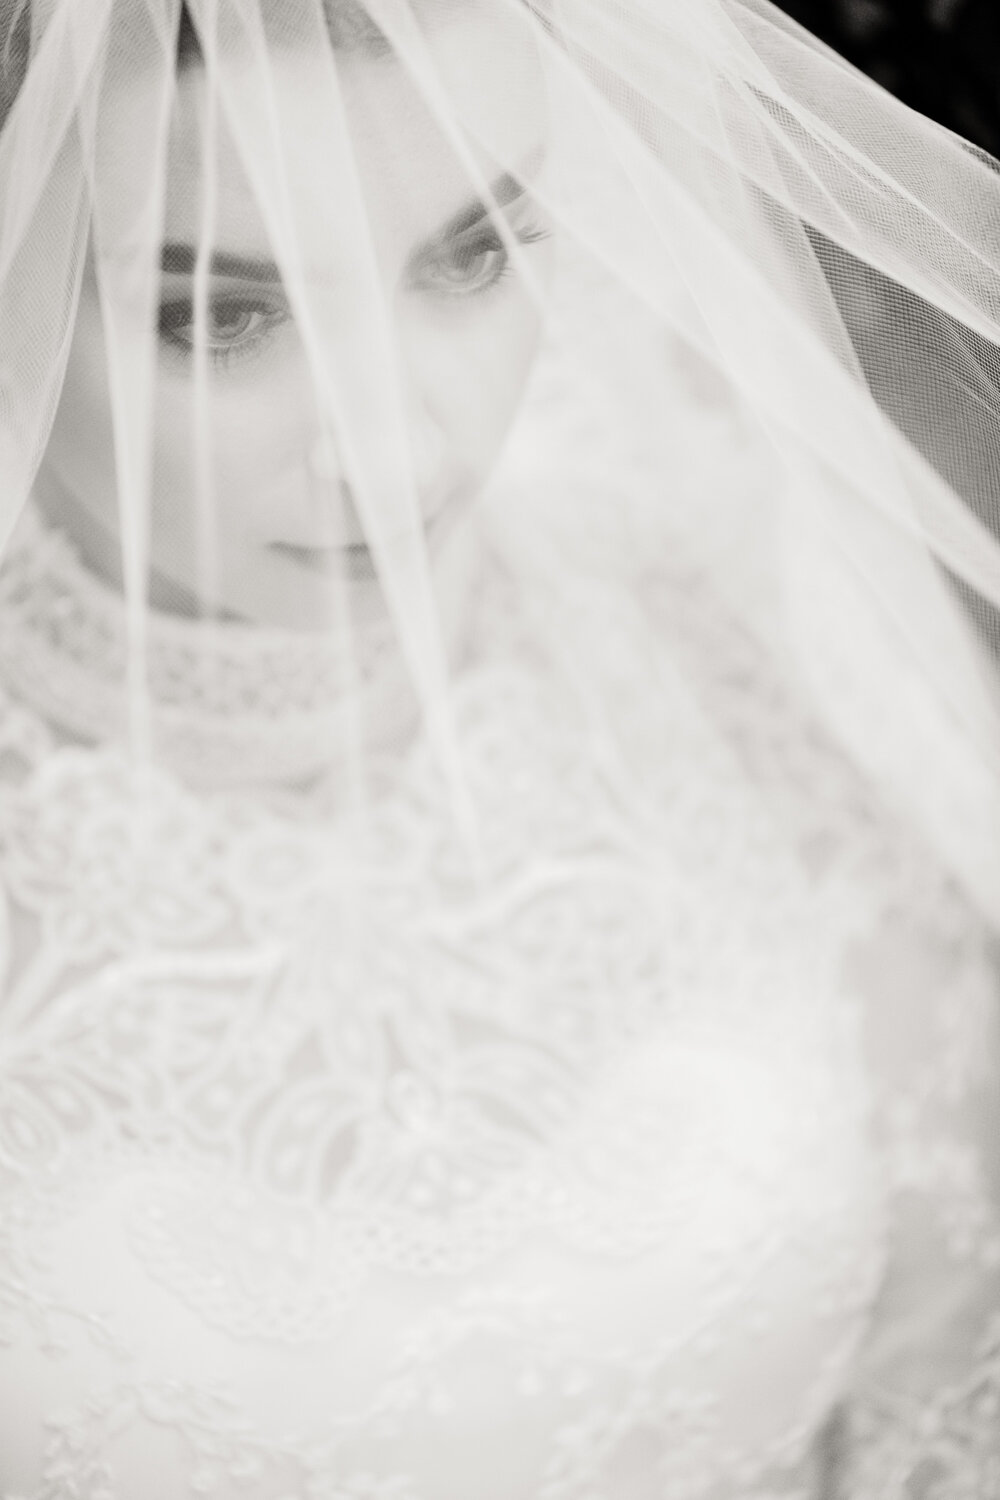 vintage valentino wedding dress feaured in vogue by brian dorsey